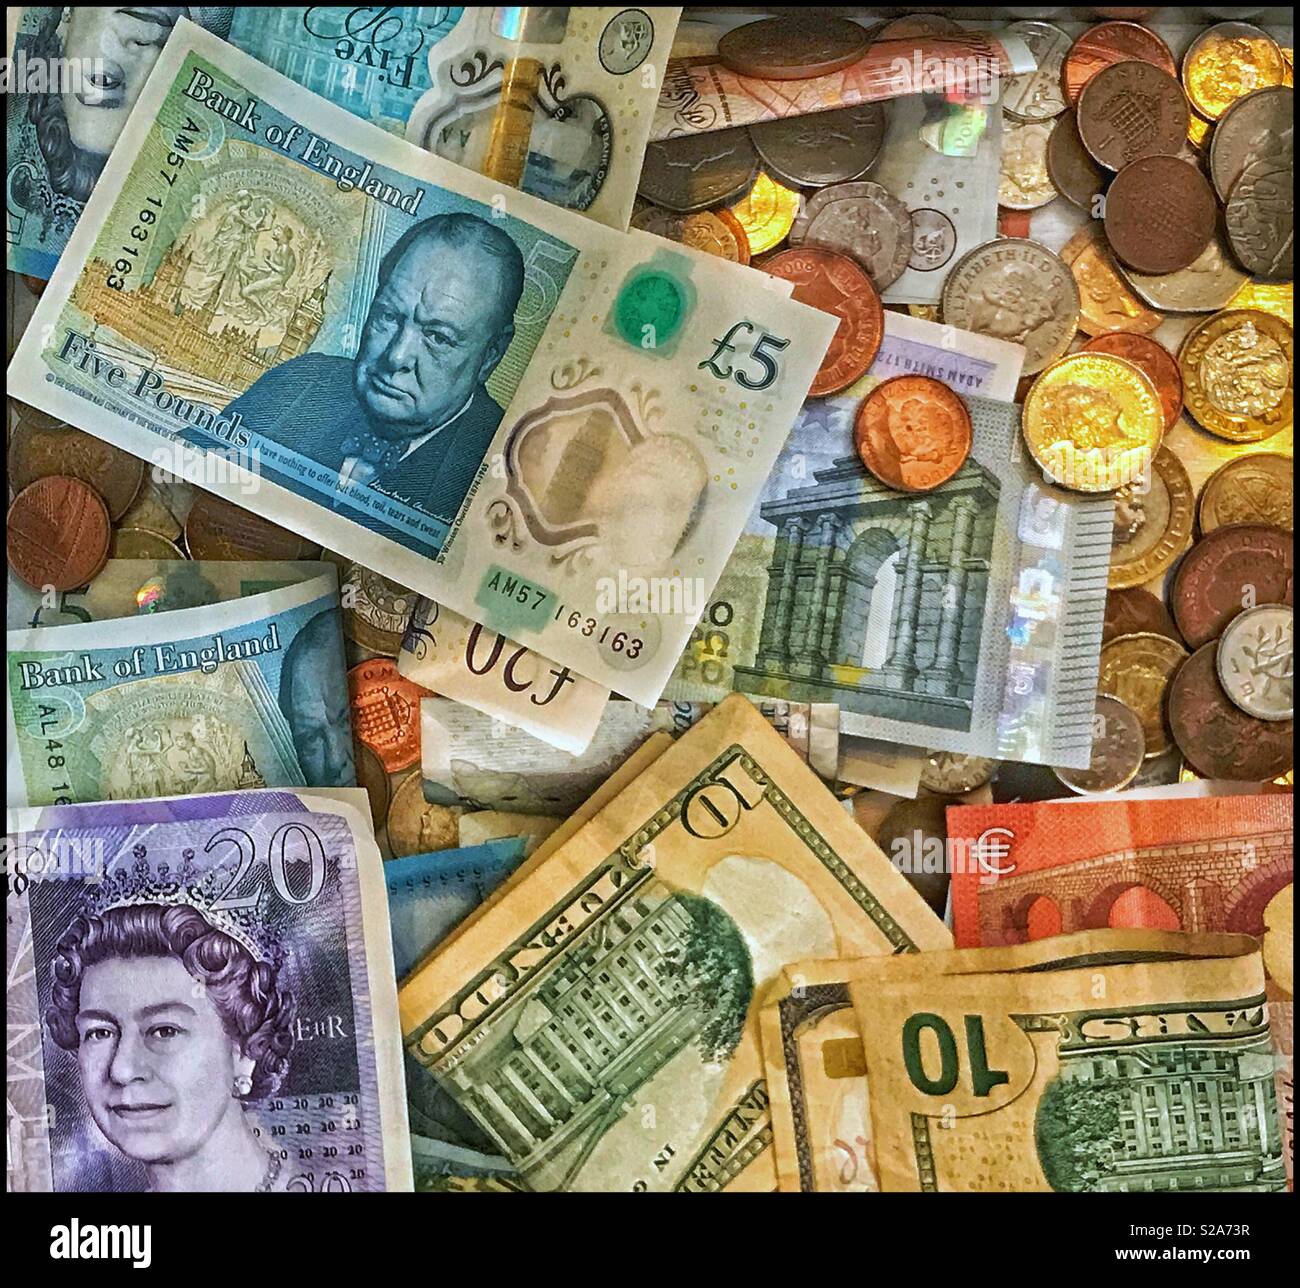 Una raccolta di varie banconote e monete. Chiaramente visibili sono le venti sterline nota, il nuovo 5 Pound Sterling nota e i dieci Stati Uniti Dollar nota/Bill. Una foto per l'economia globale. Foto Stock